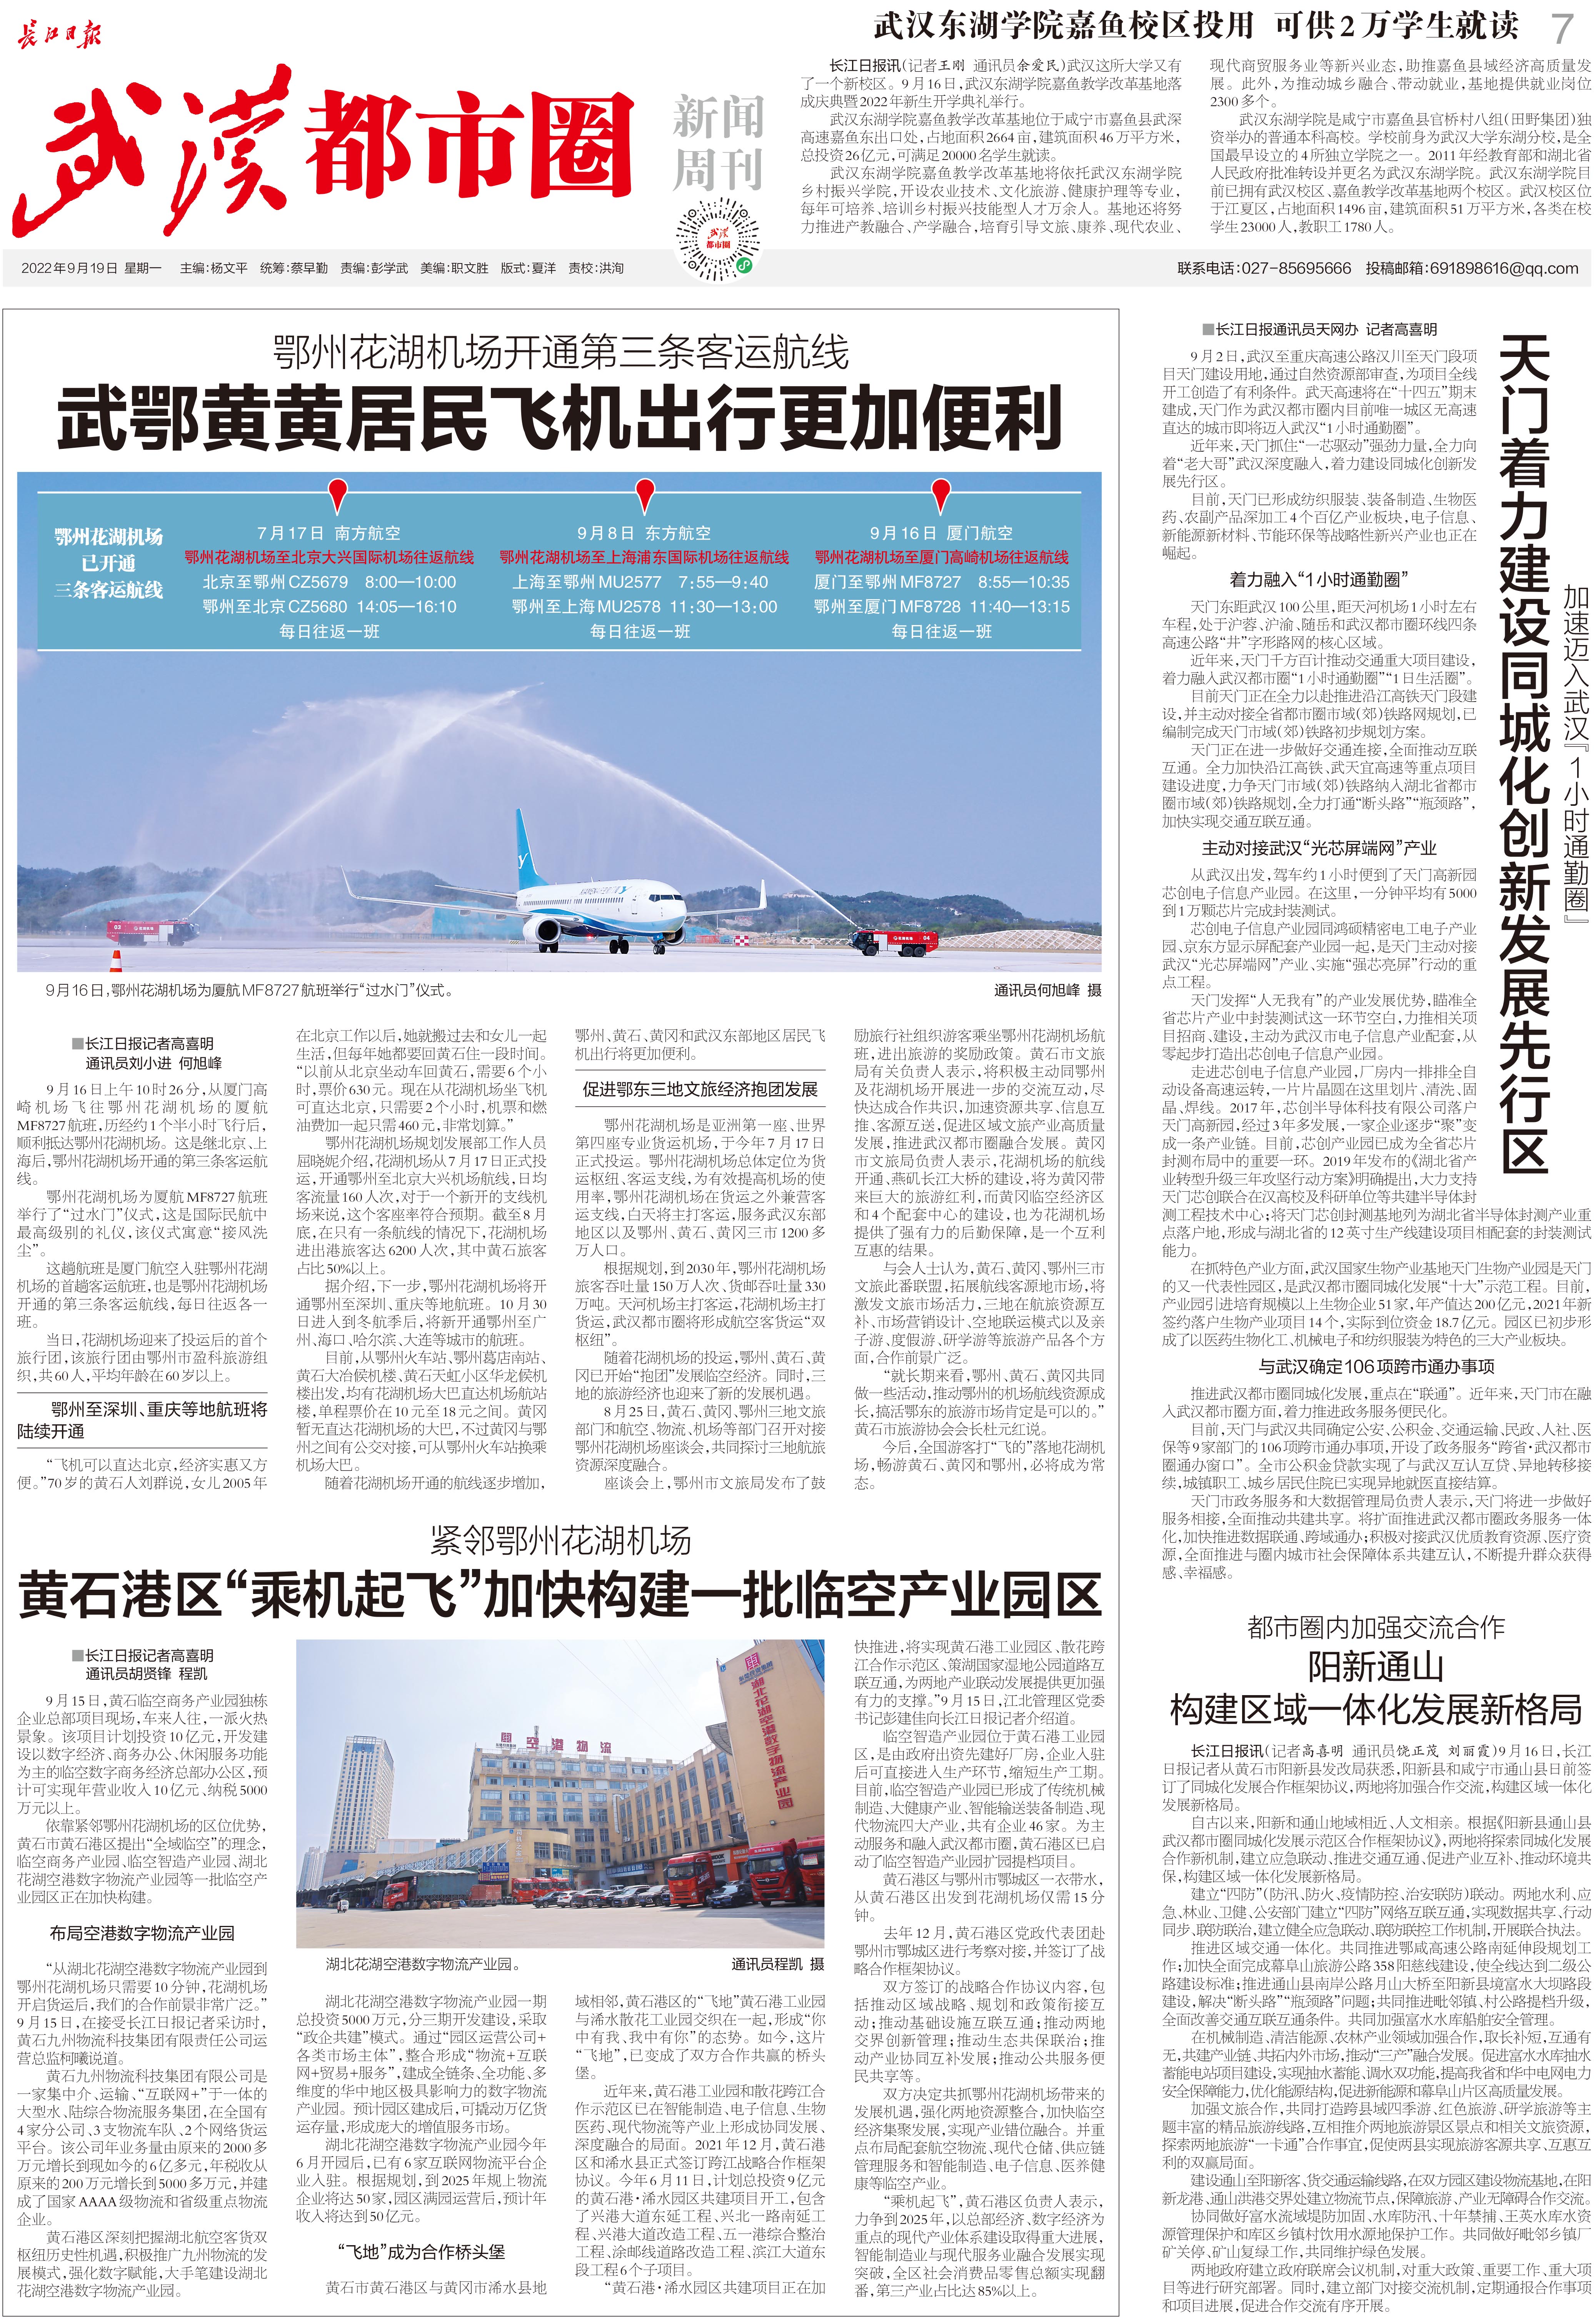 九城同心向未来长江日报武汉都市圈新闻周刊2022年9月19日第27期报纸